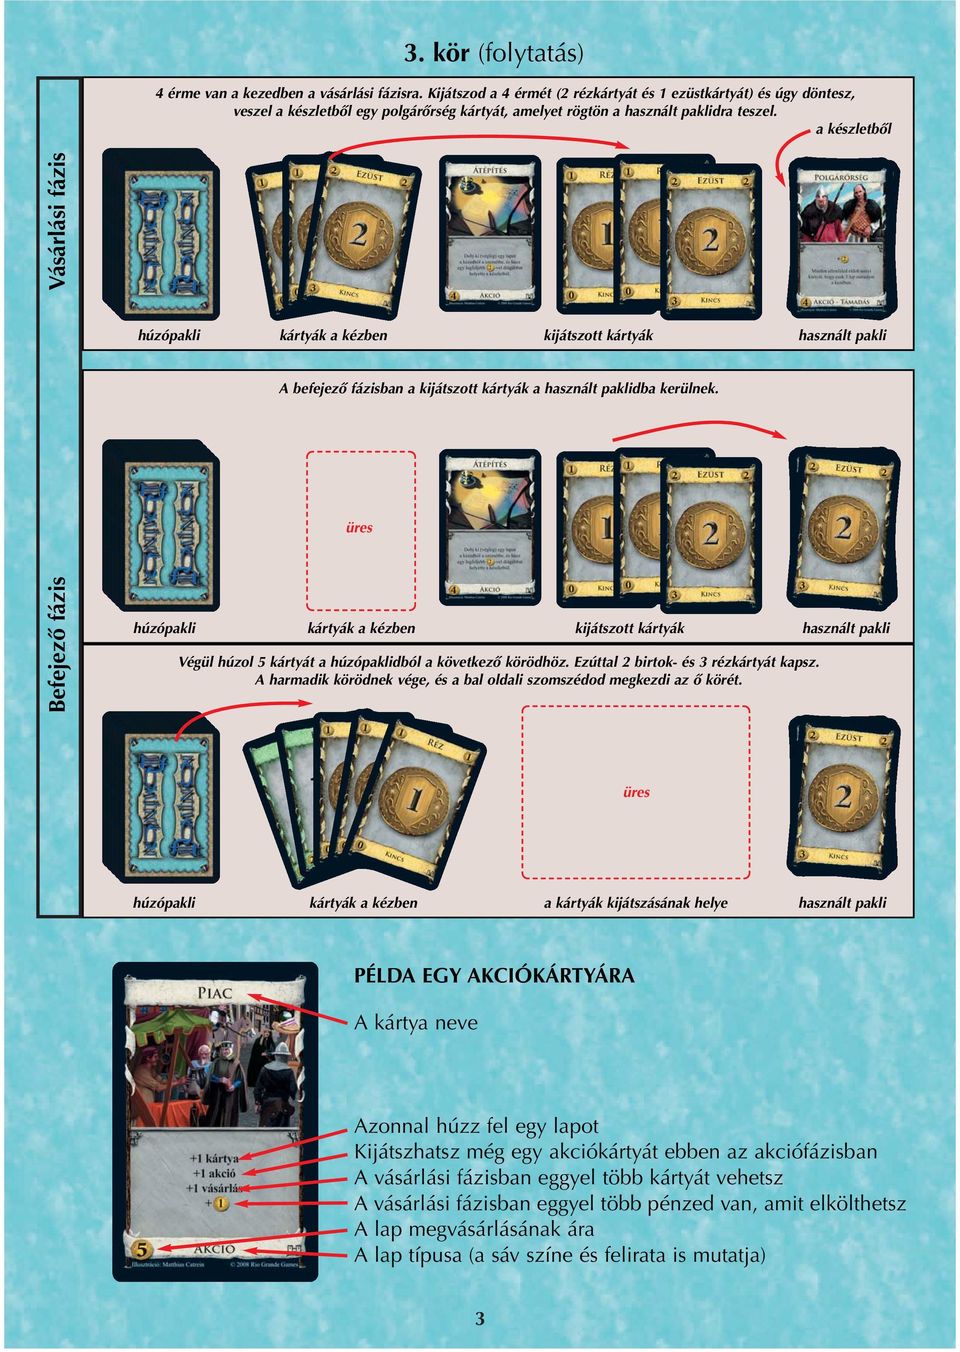 a készletből Befejező fázis Vásárlási fázis húzópakli kártyák a kézben kijátszott kártyák használt pakli A befejező fázisban a kijátszott kártyák a használt paklidba kerülnek.